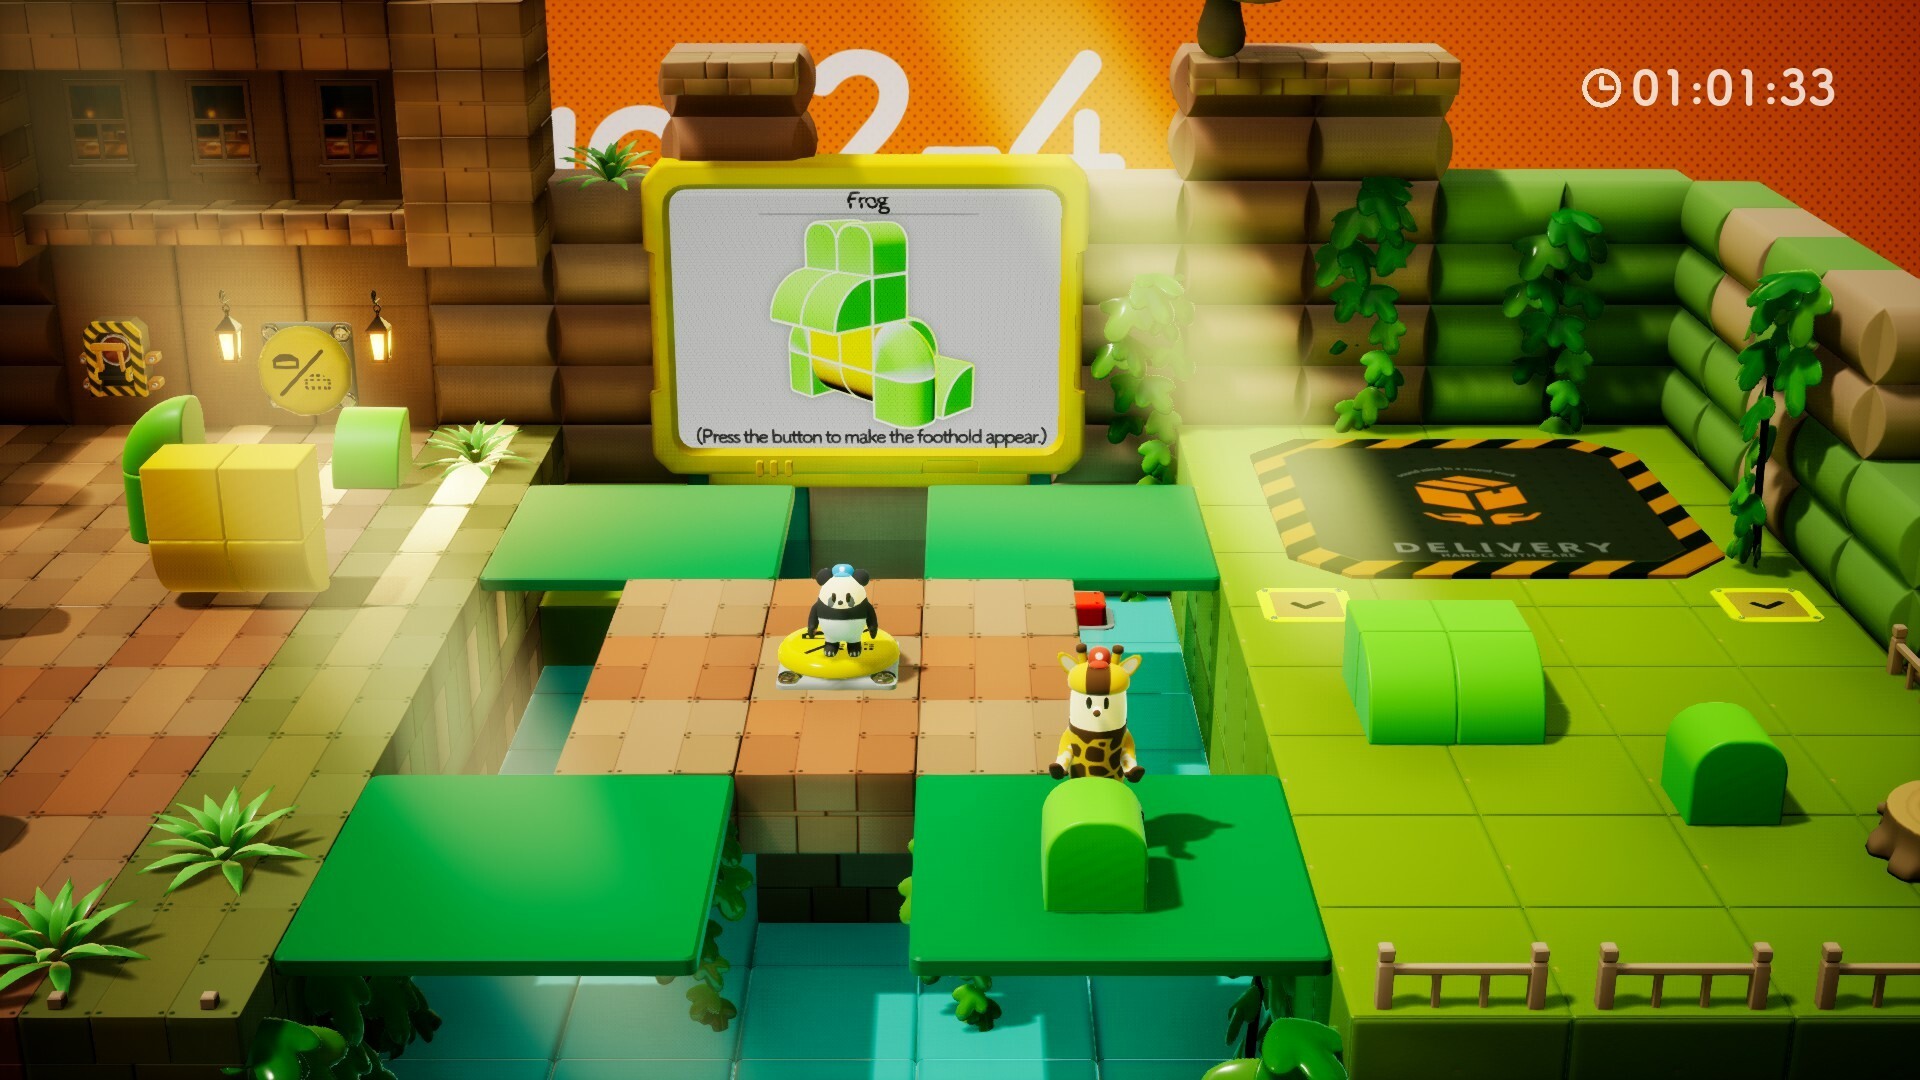 动作益智游戏《奇皮与诺宝》3 月初发售 扮演两位角色合力拼出玩具插图4